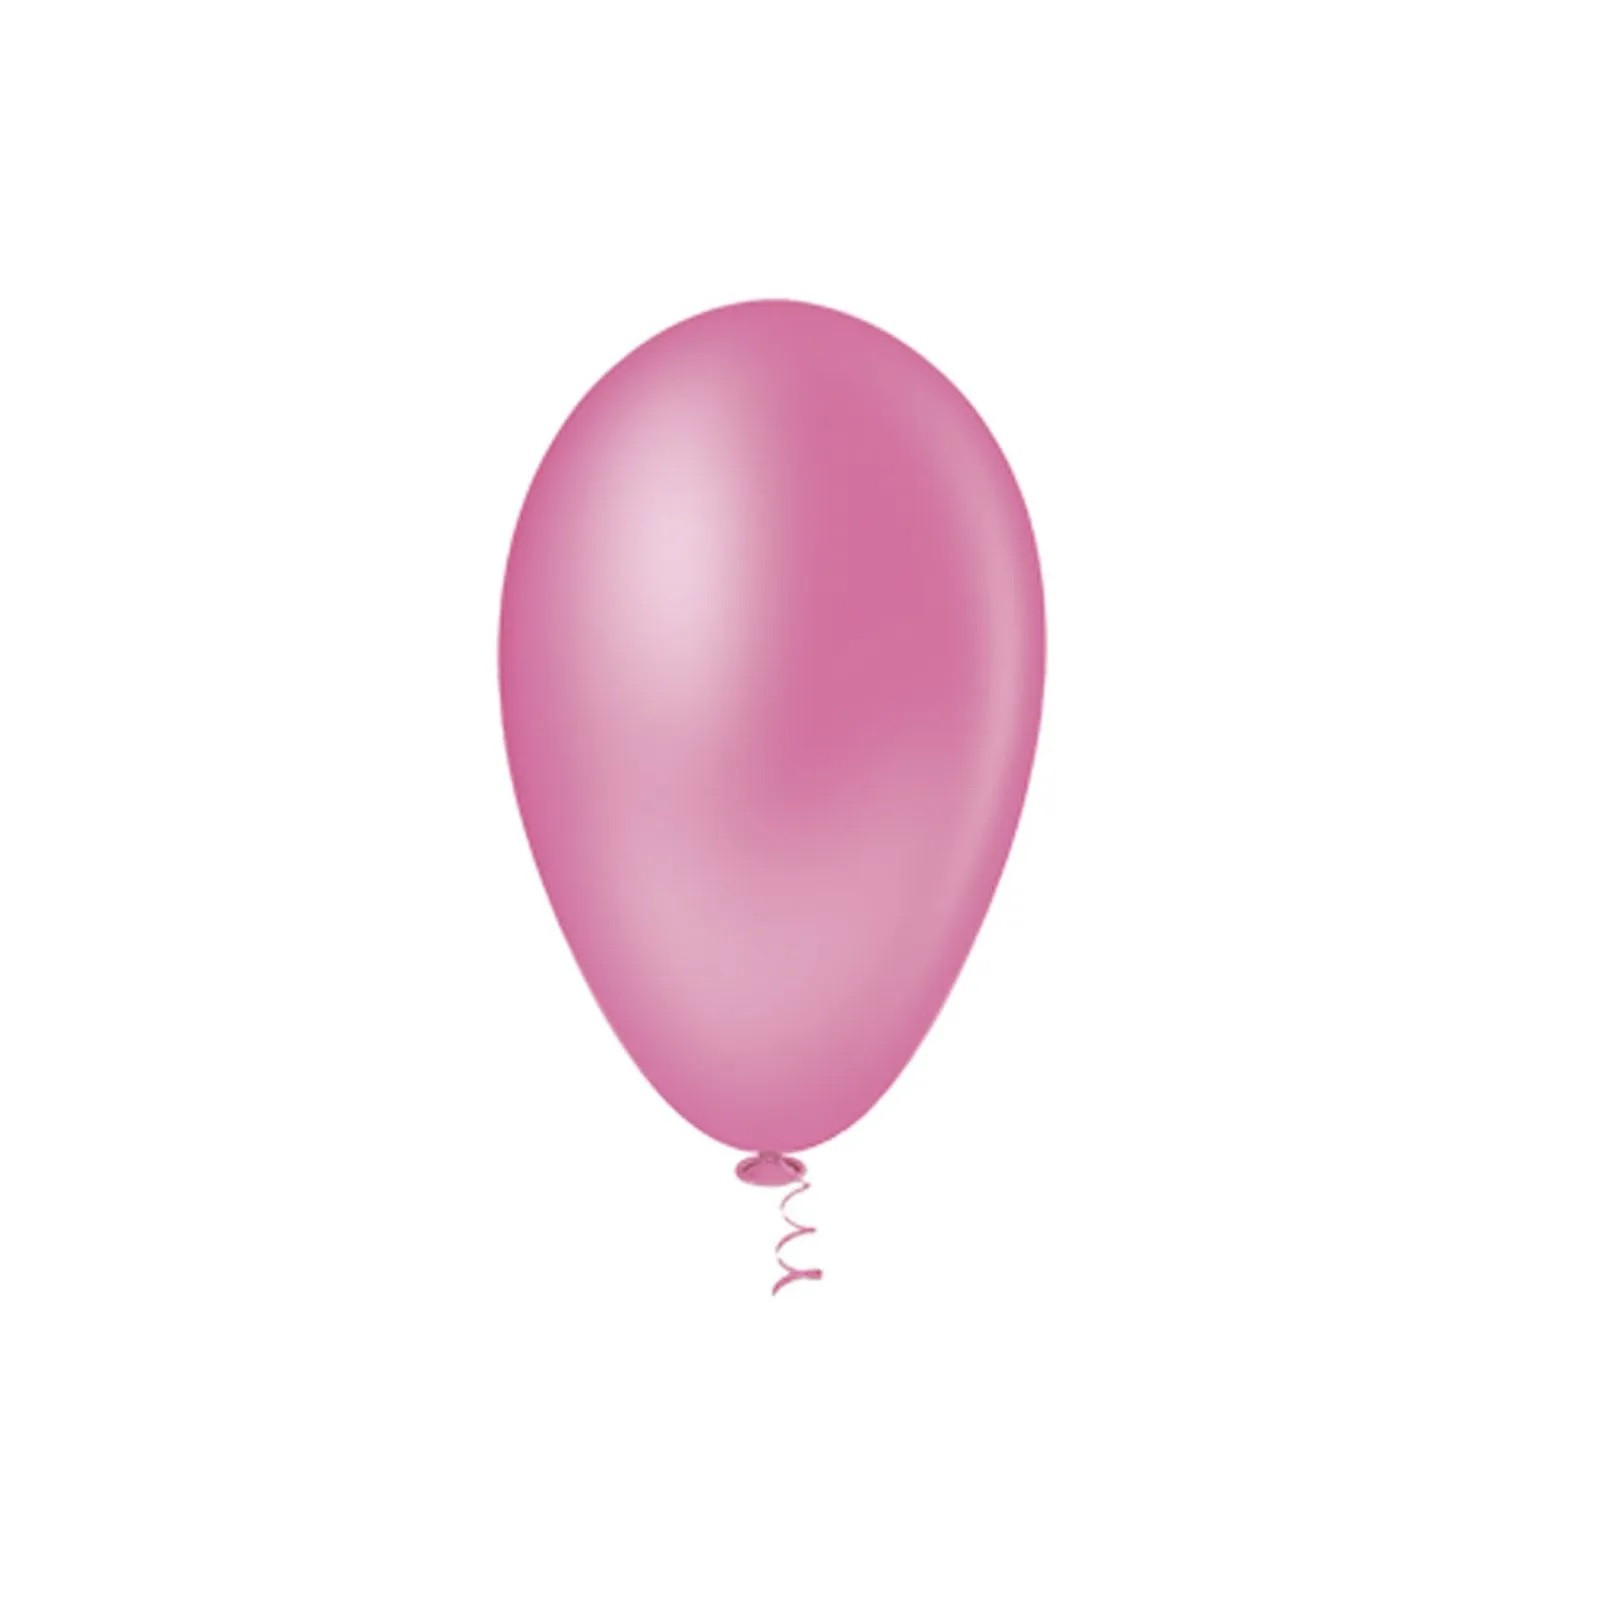 Balão Pera Liso Rosa Forte Nº6.5  c /50 unid - Pic Pic